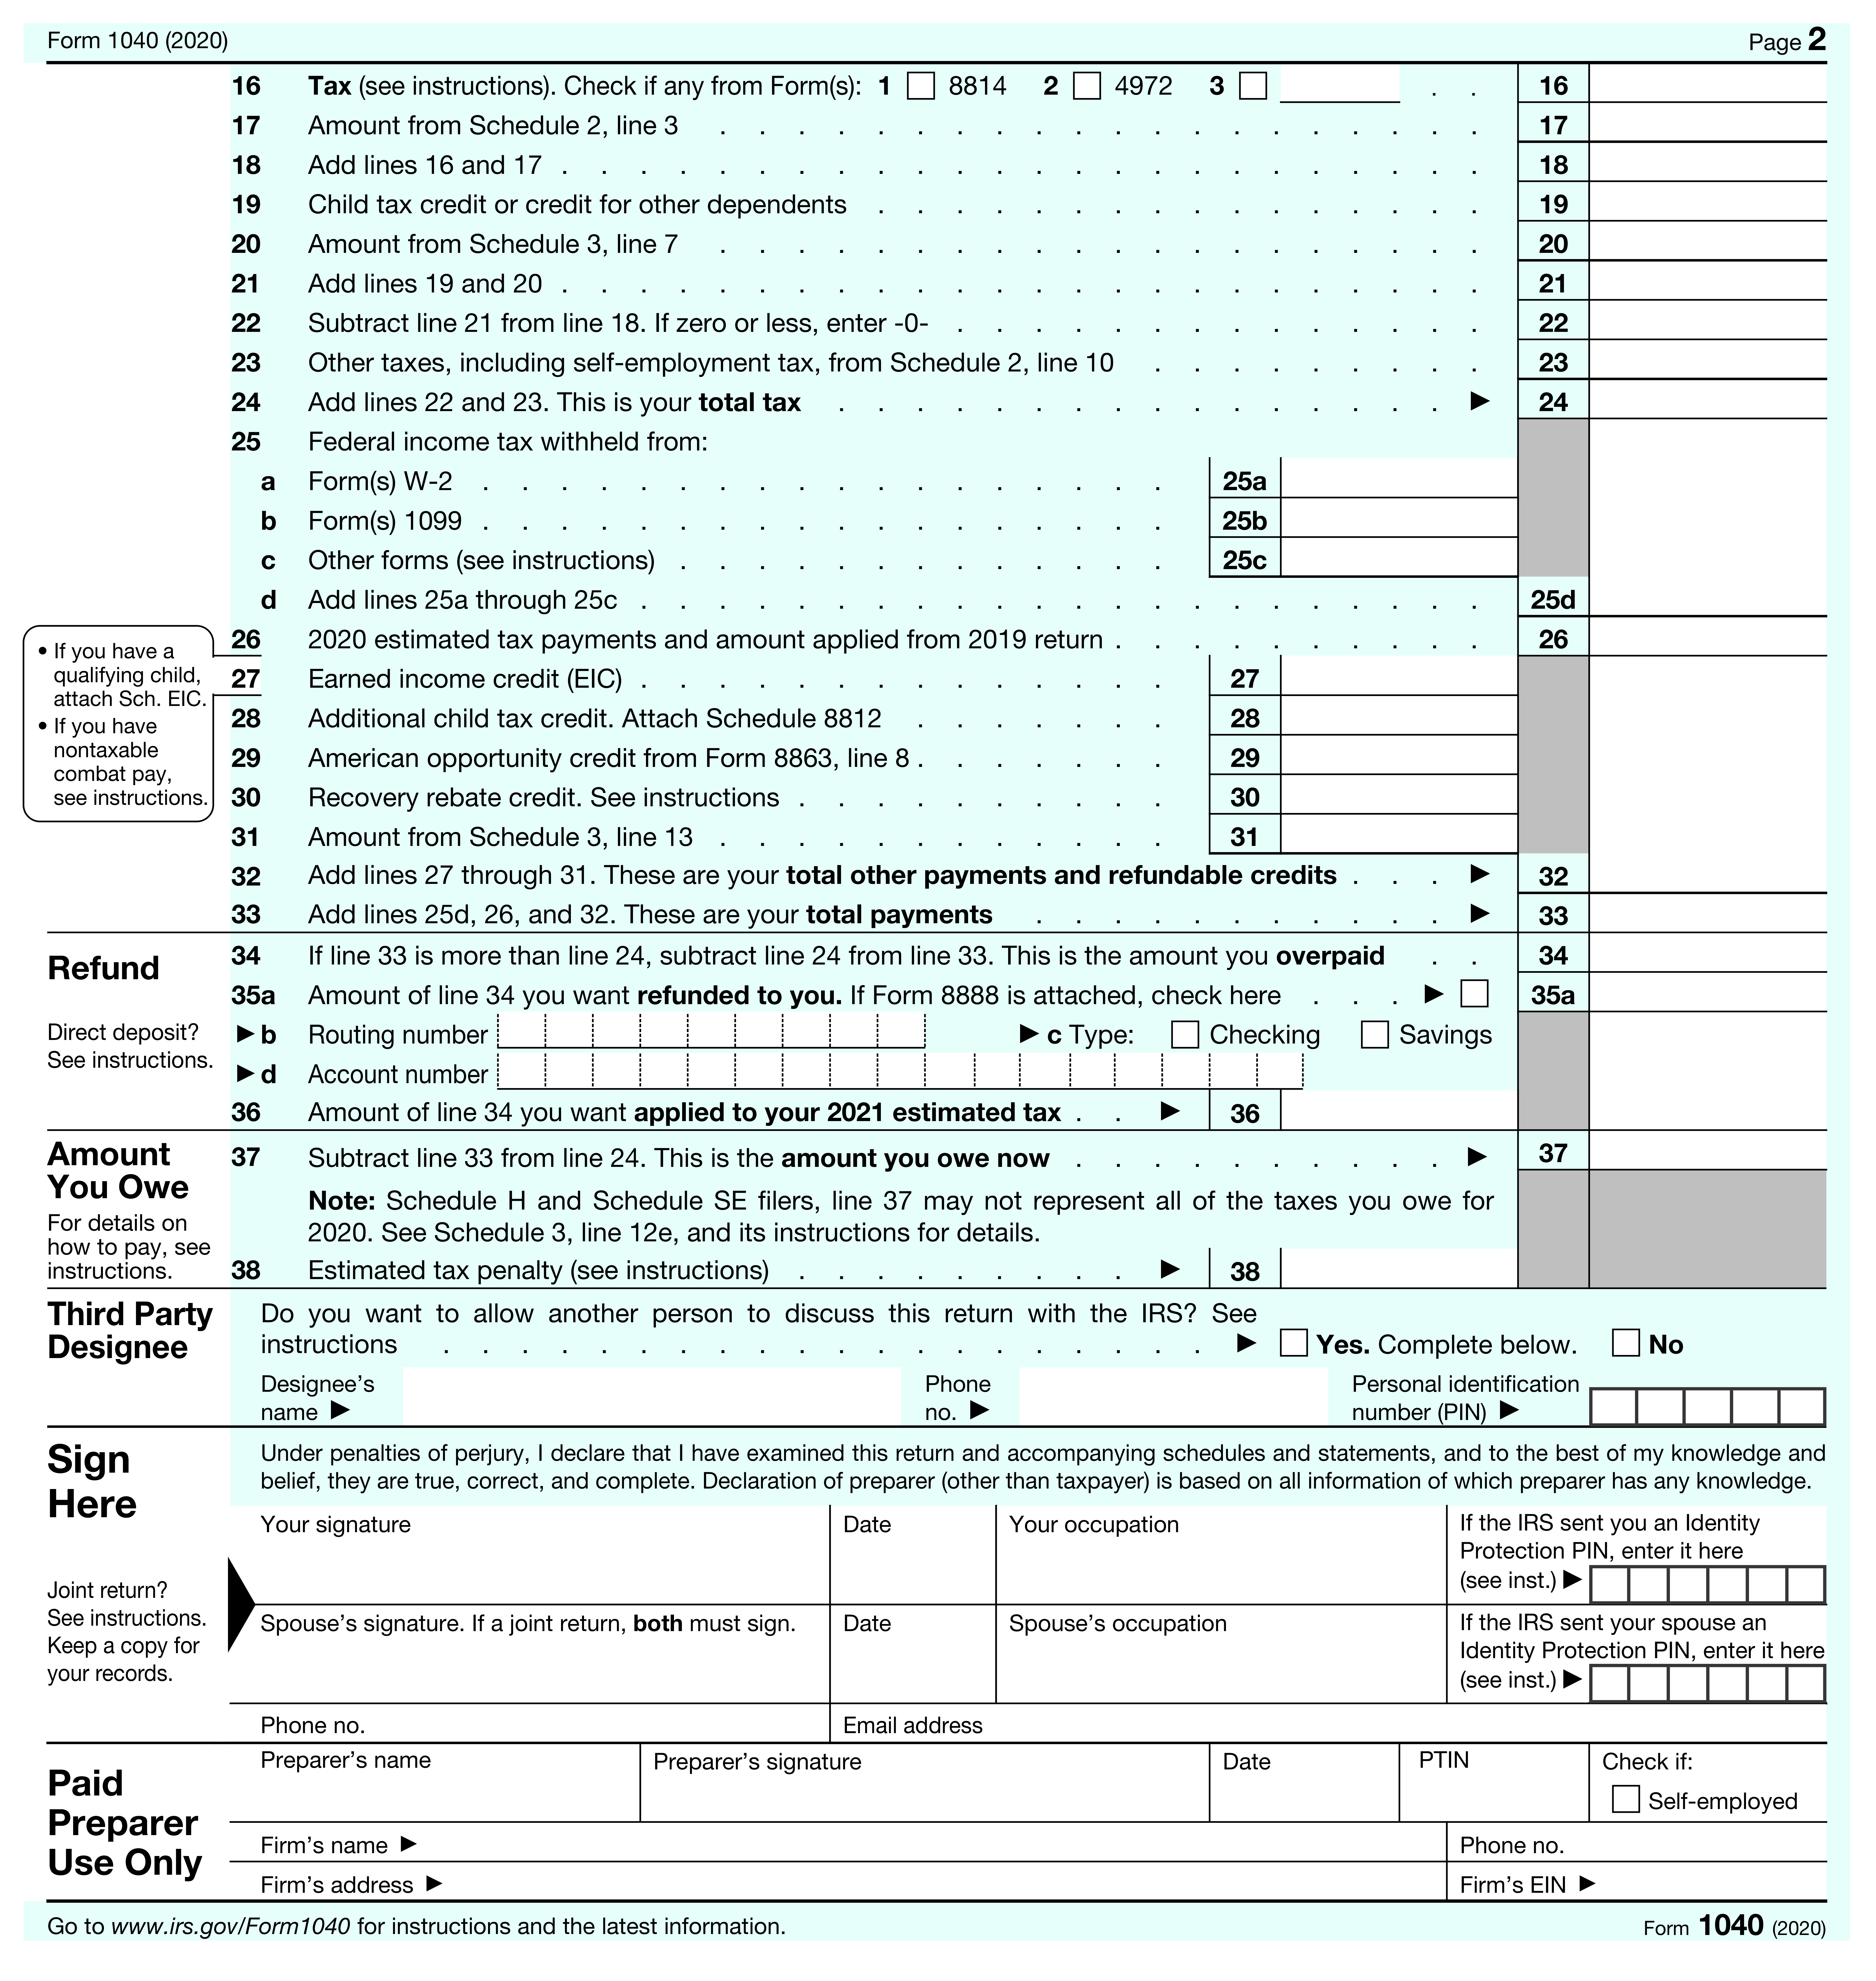 Tax_Form_2.jpg